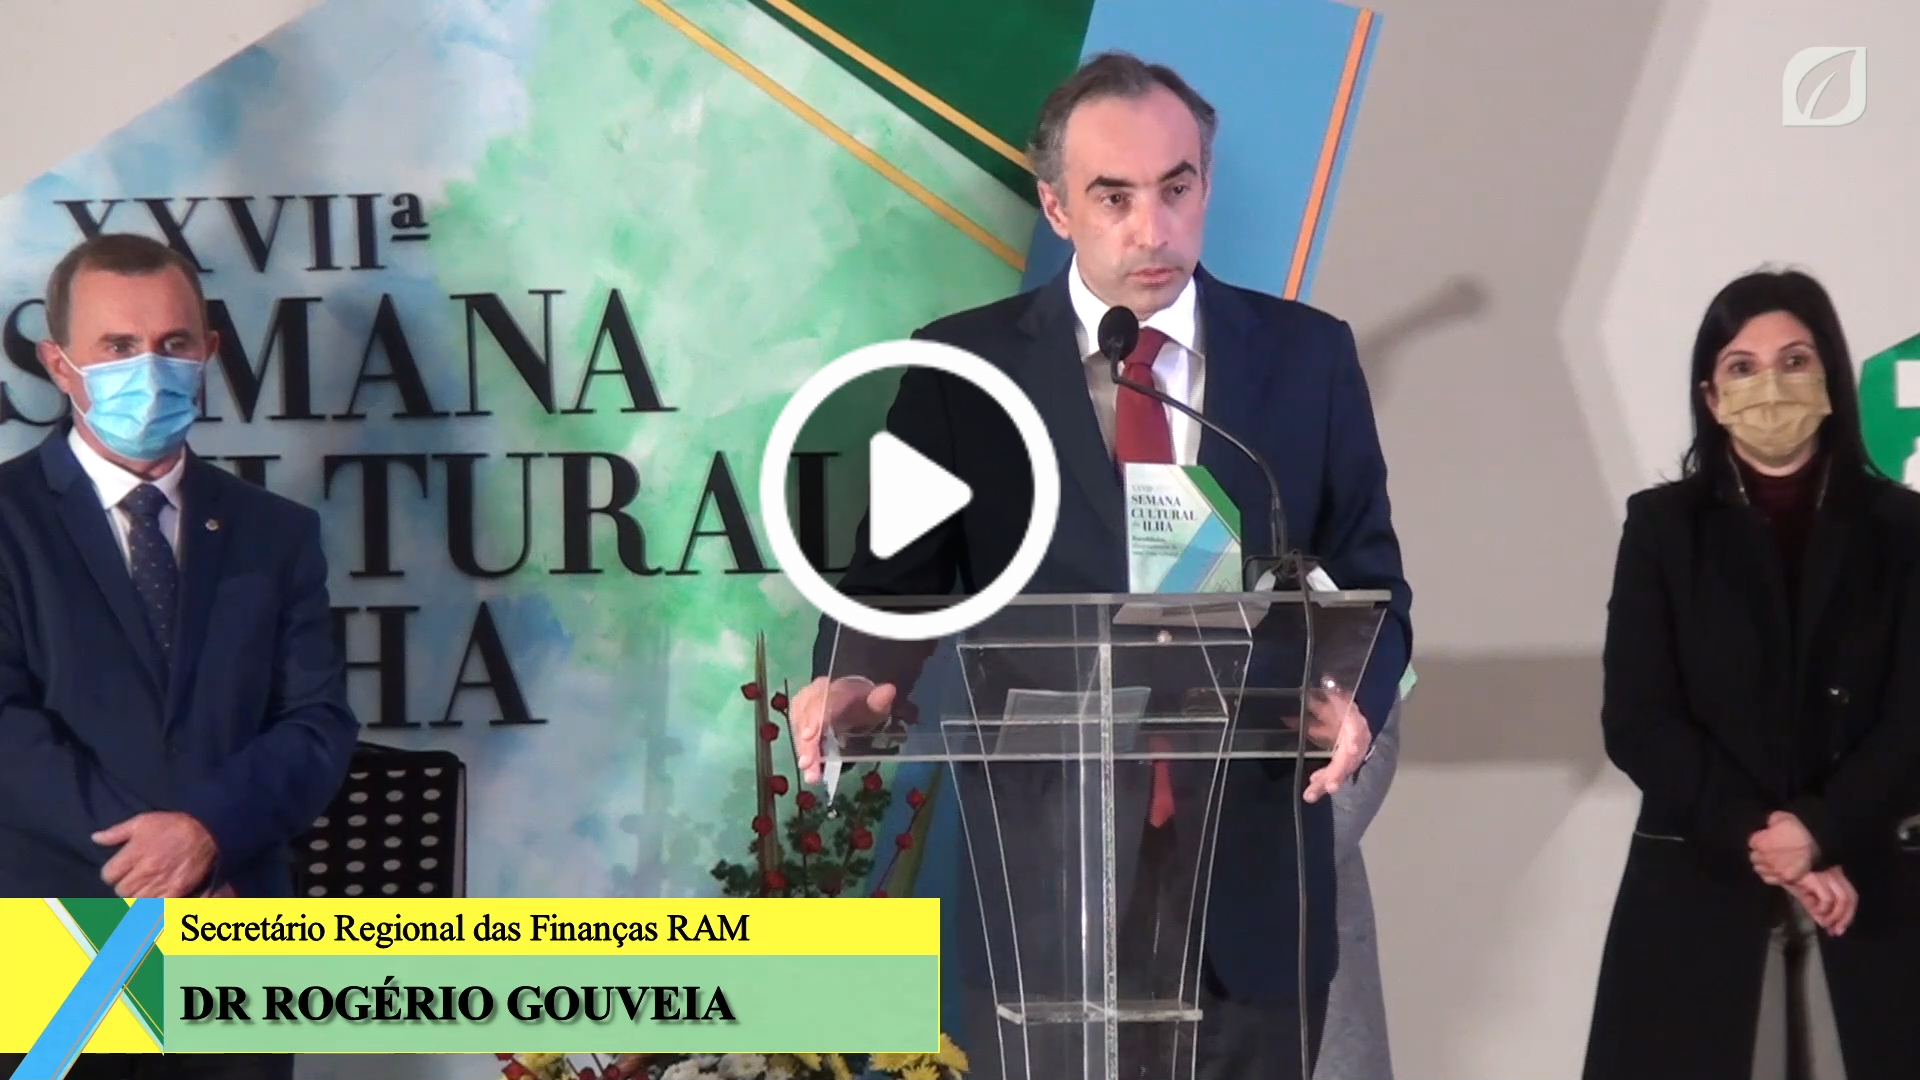 Dr. Rogério Gouveia, Secretário Regional das Finanças, saúda mais uma iniciativa desta Casa do Povo